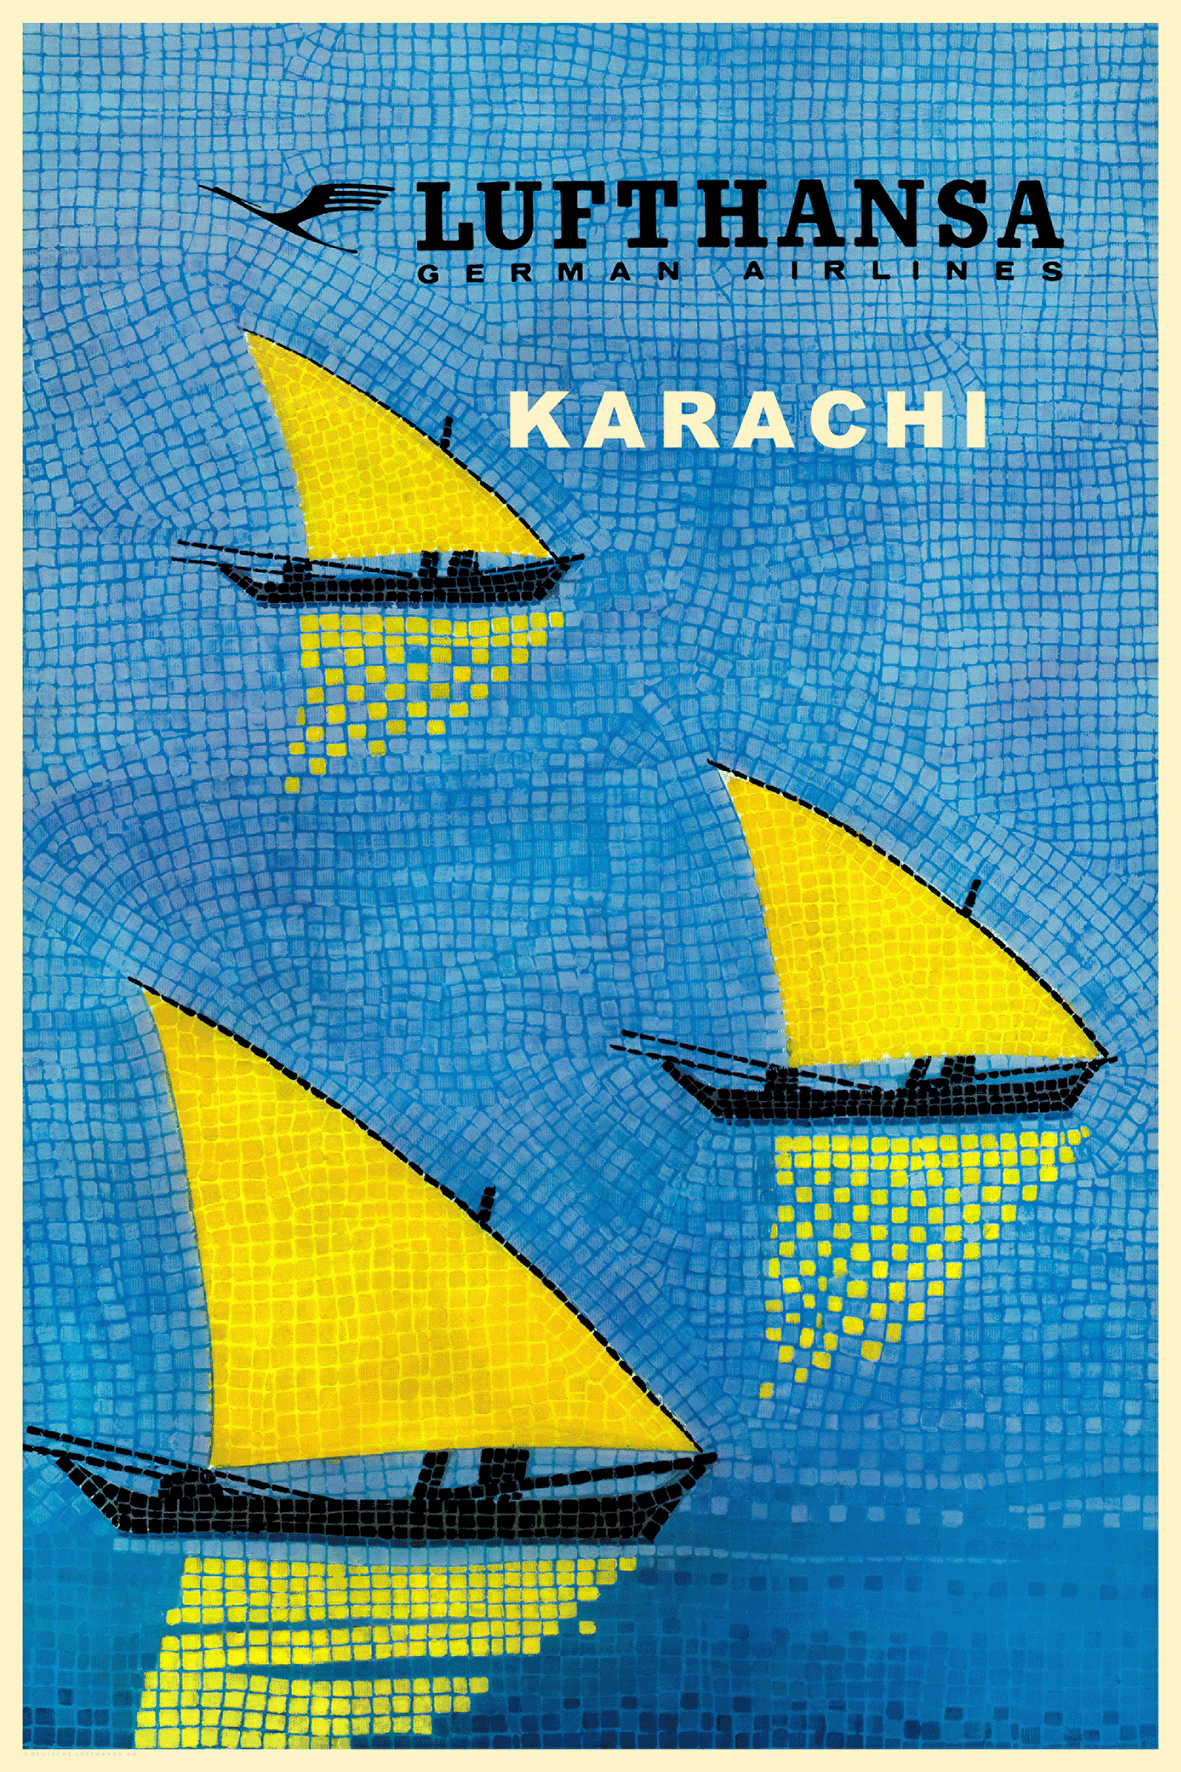 Lufthansa, Karachi [Yellow Sails]